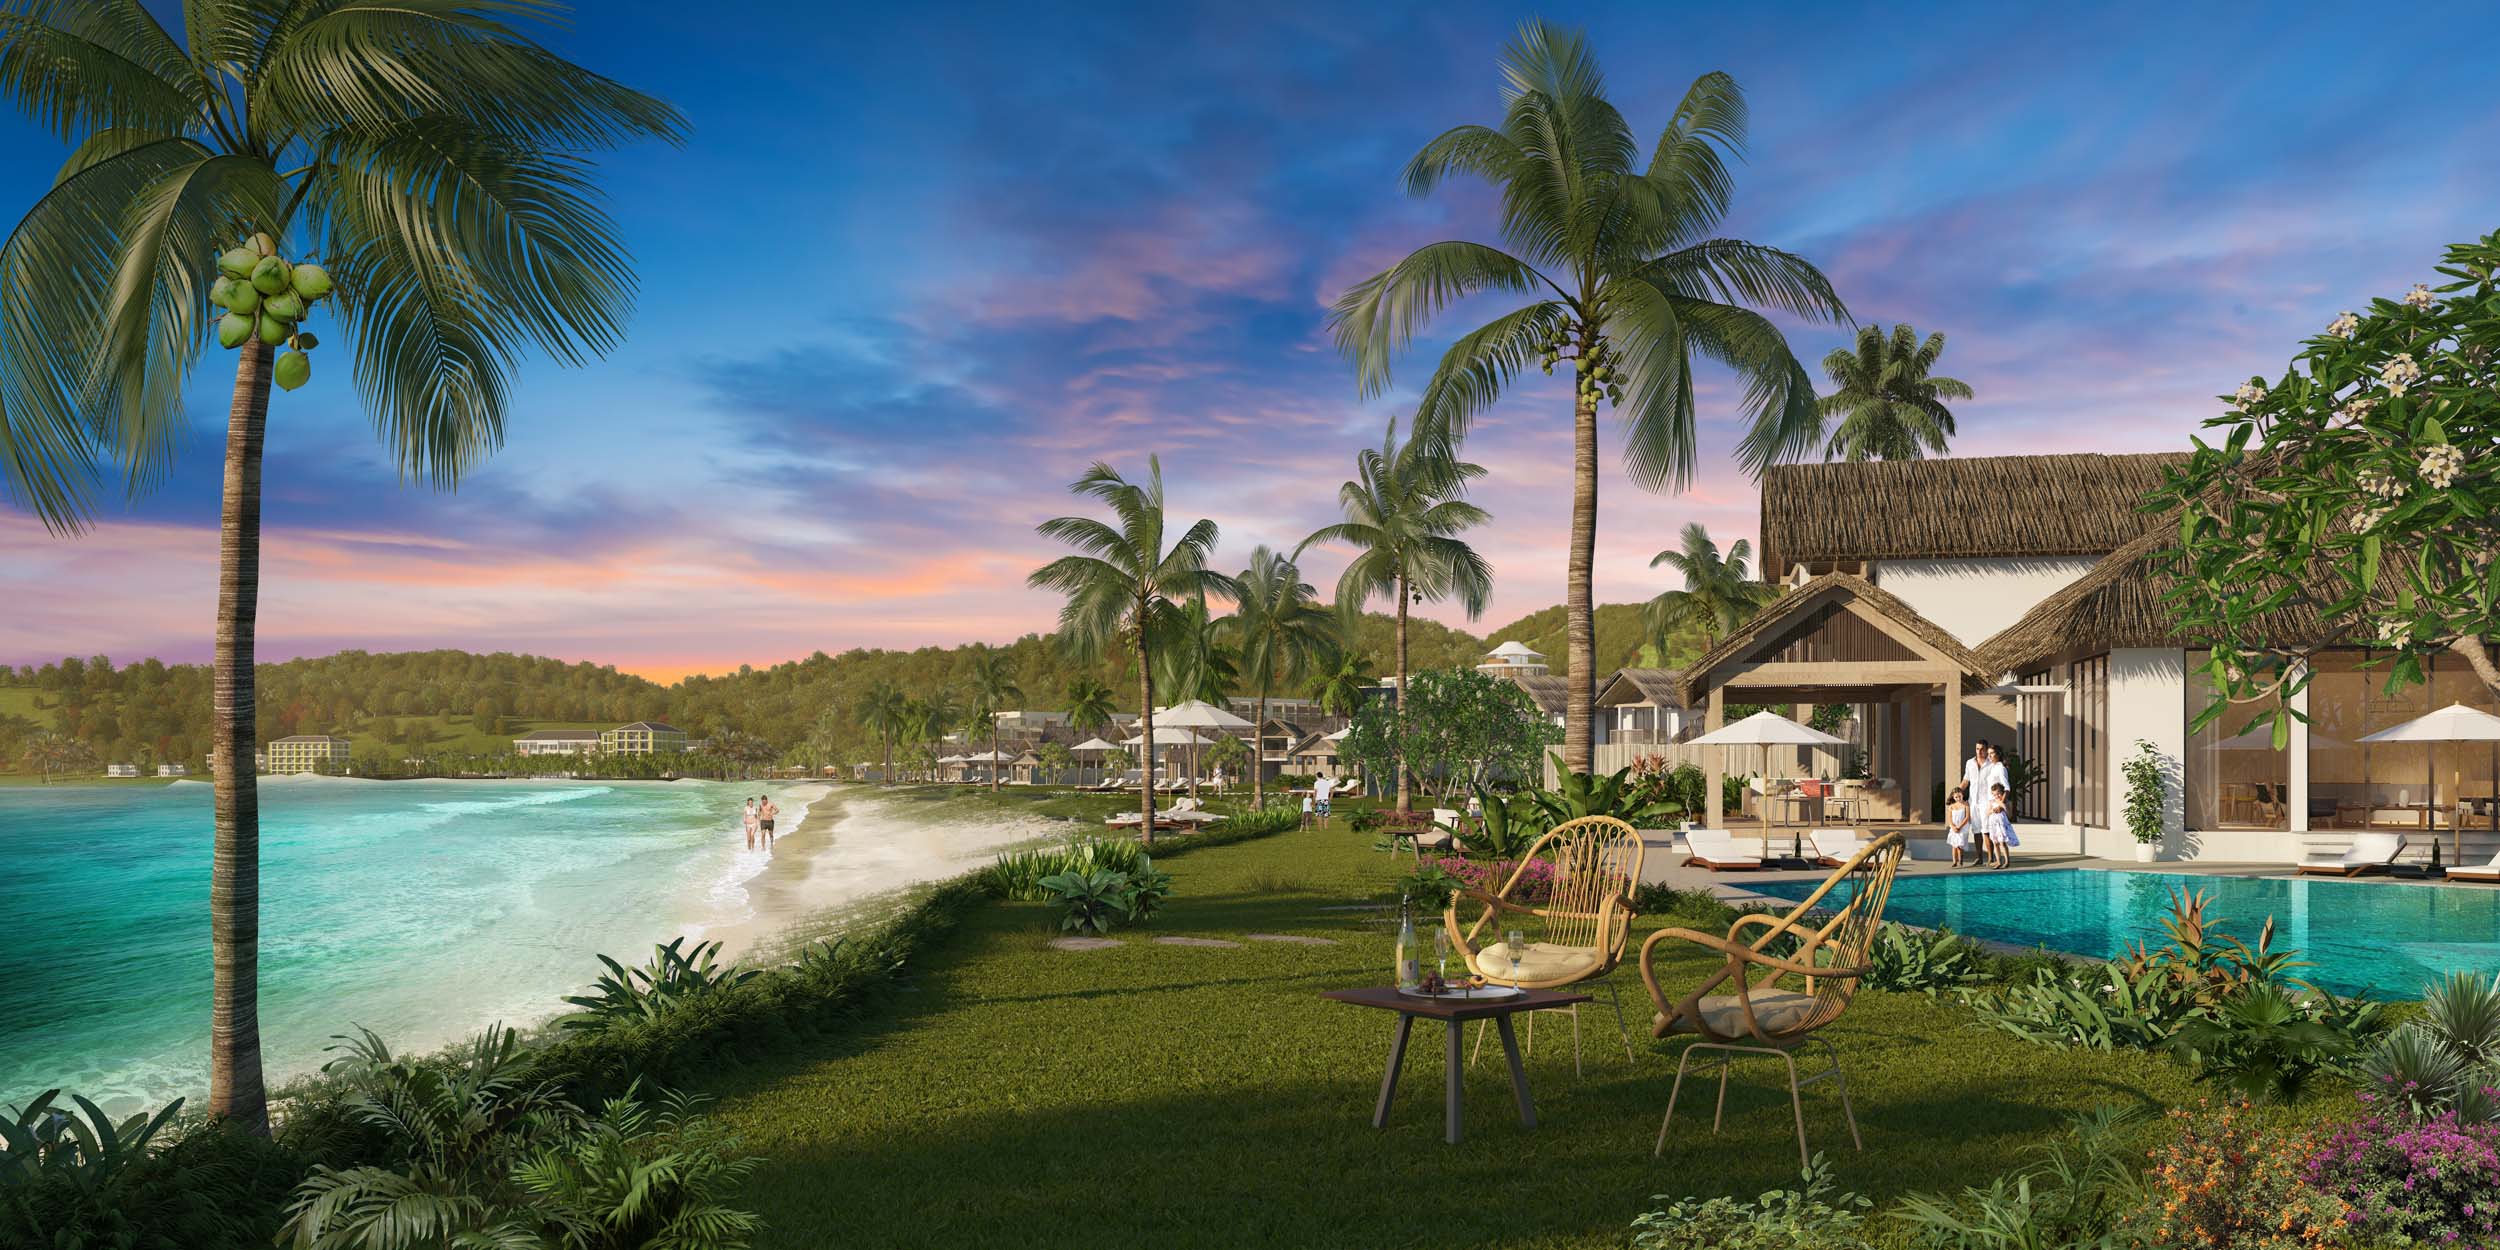 Ra mắt dự án biệt thự siêu sang Sun Premier Village Kem Beach Resort Phú Quốc